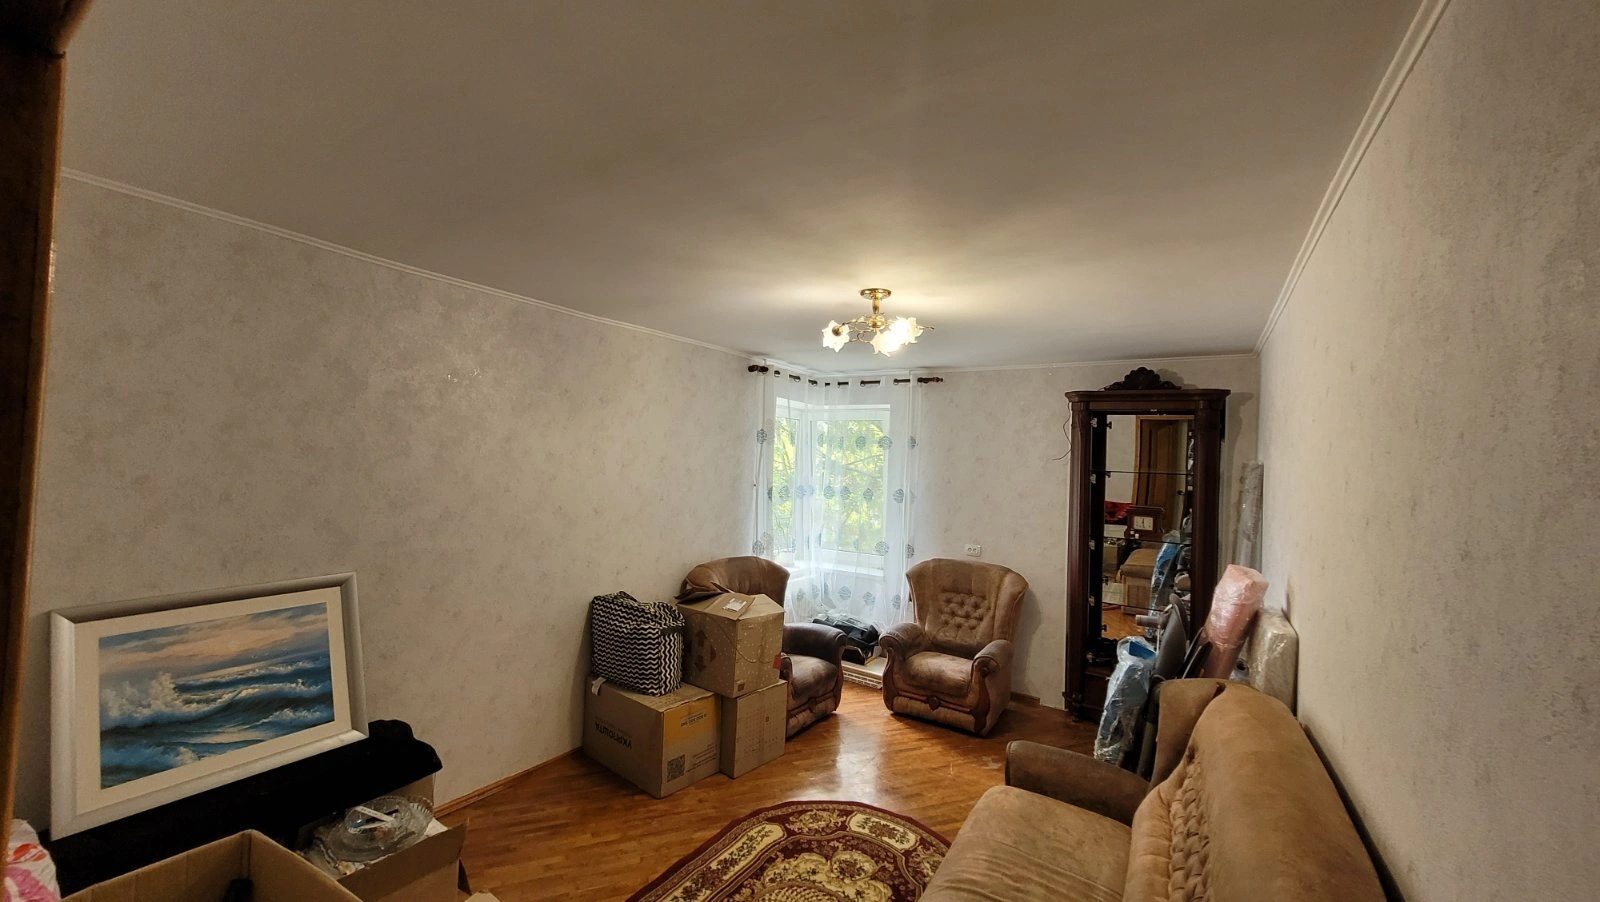 Продам 2 комнатную квартиру в кирпичном доме на Таирова